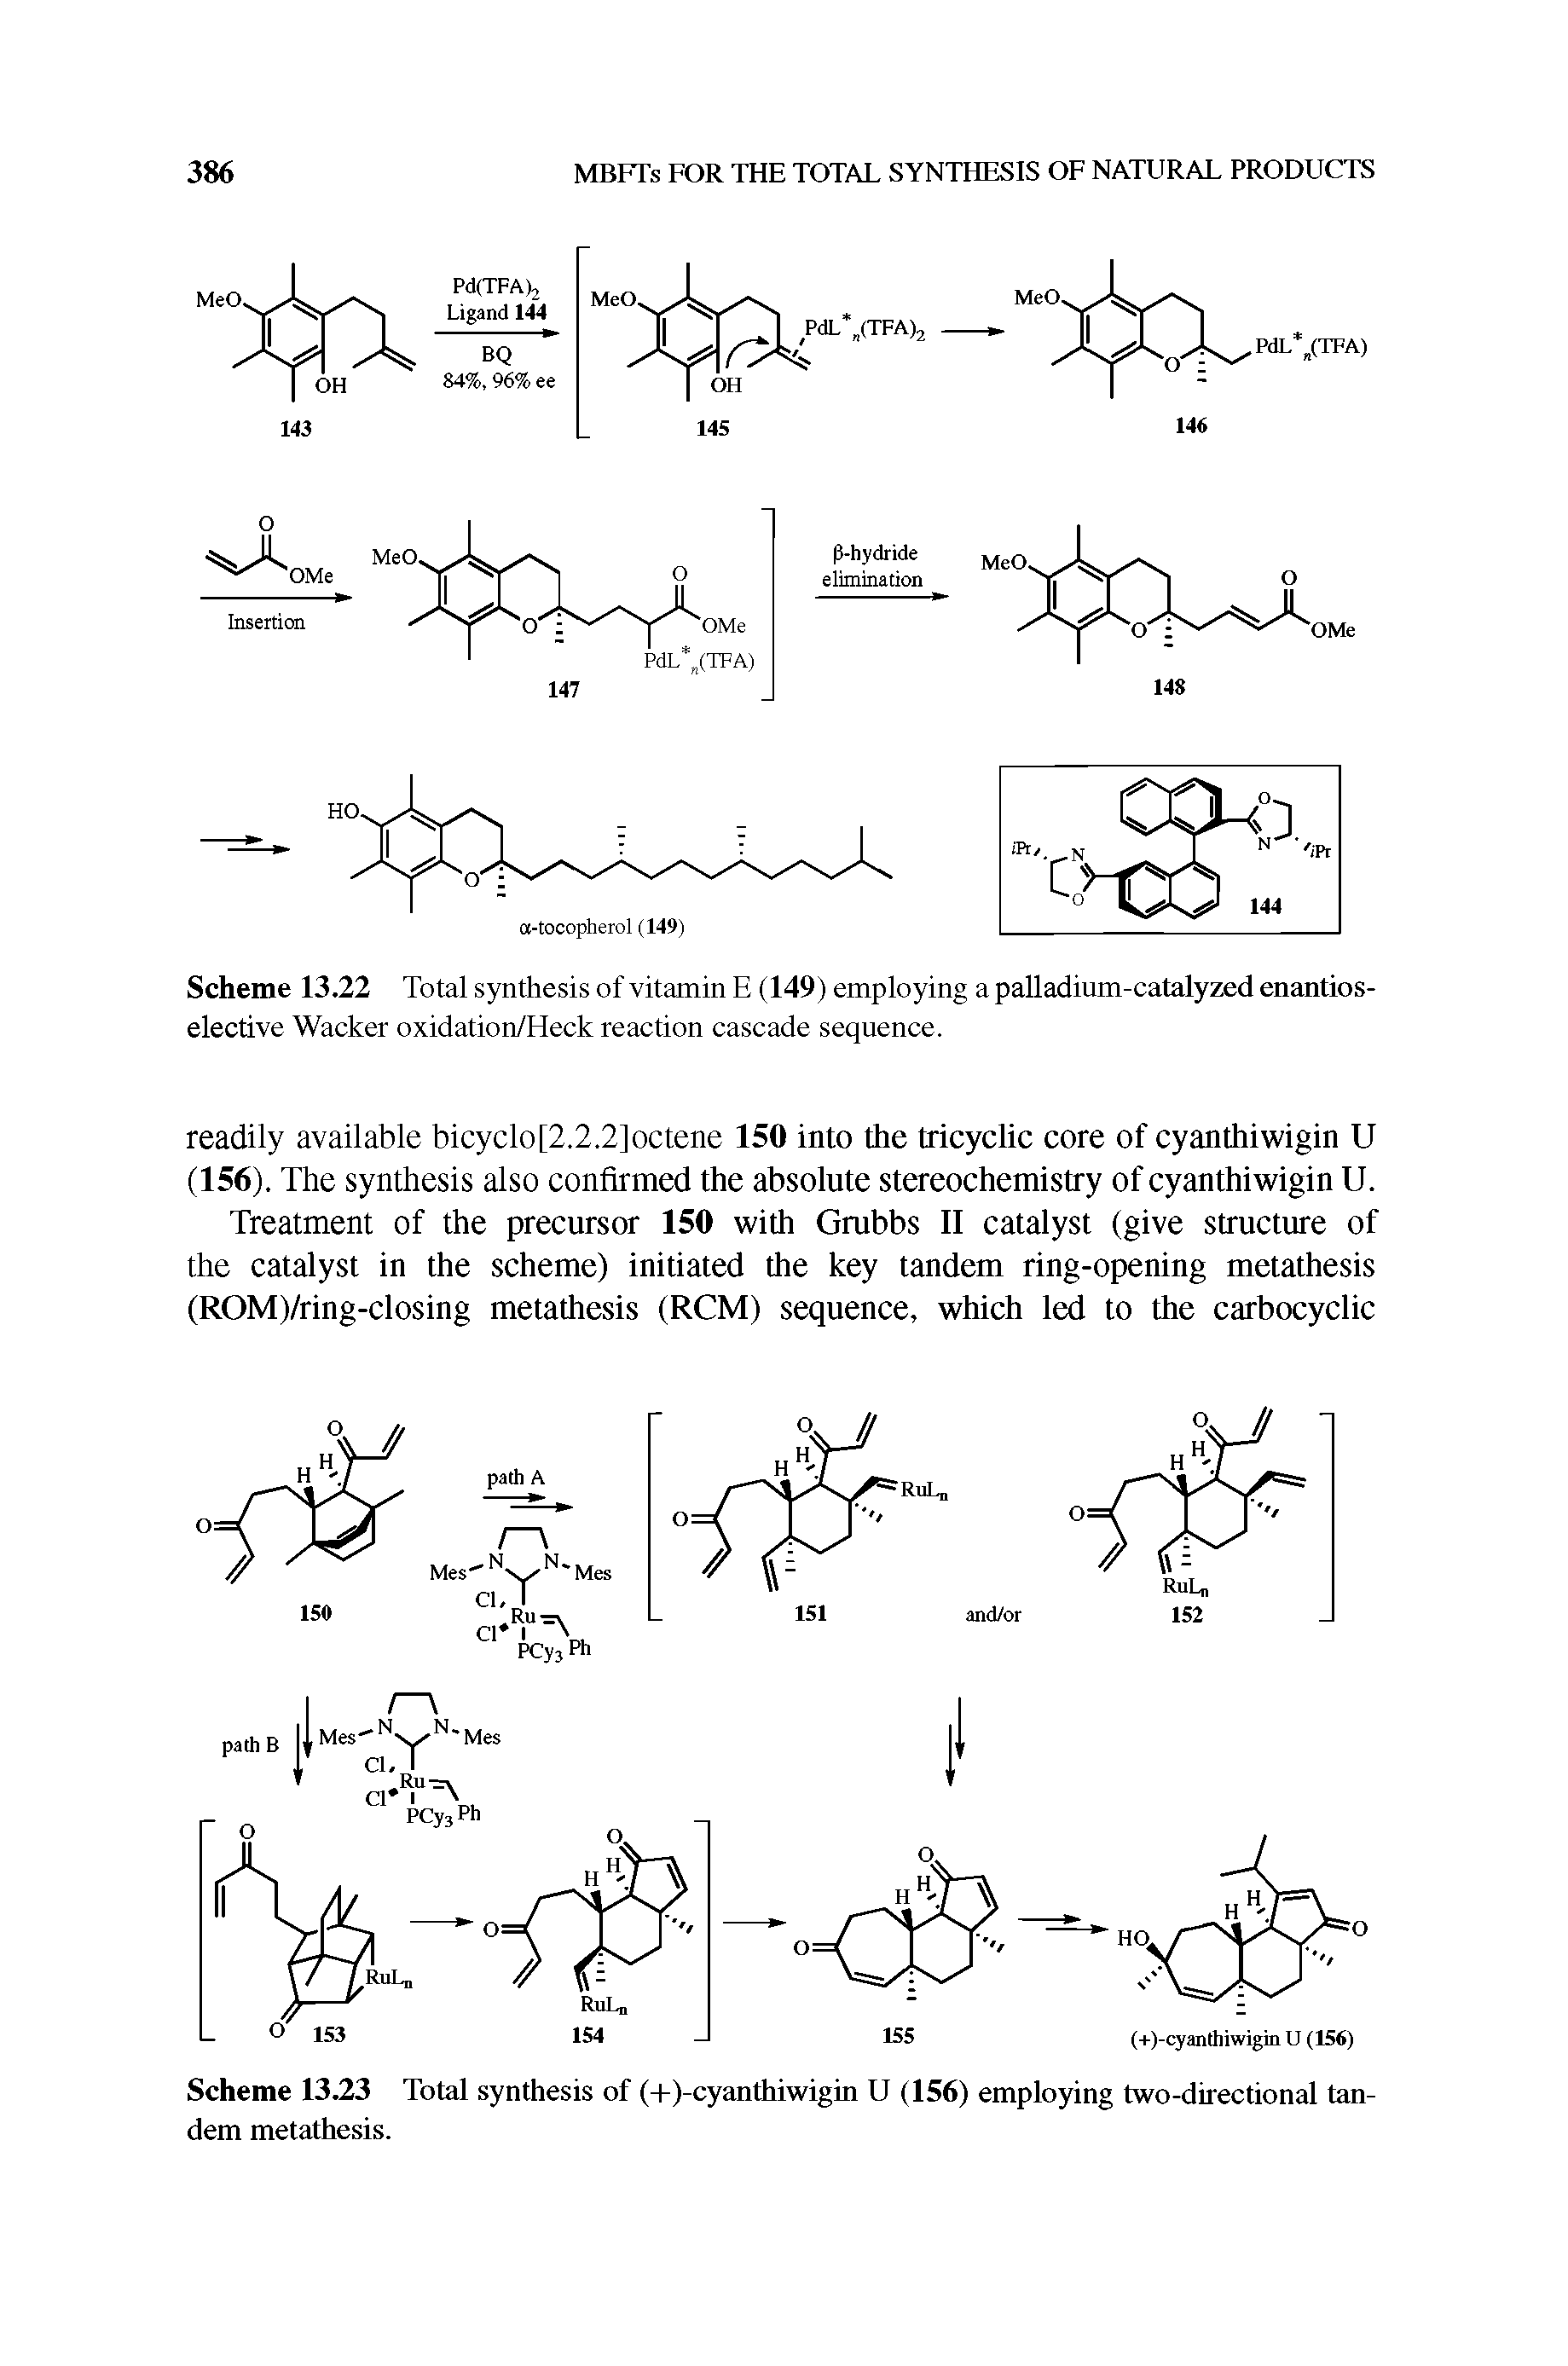 Scheme 13.23 Total synthesis of (-1-(-cyanthiwigin U (156) employing two-directional tandem metathesis.